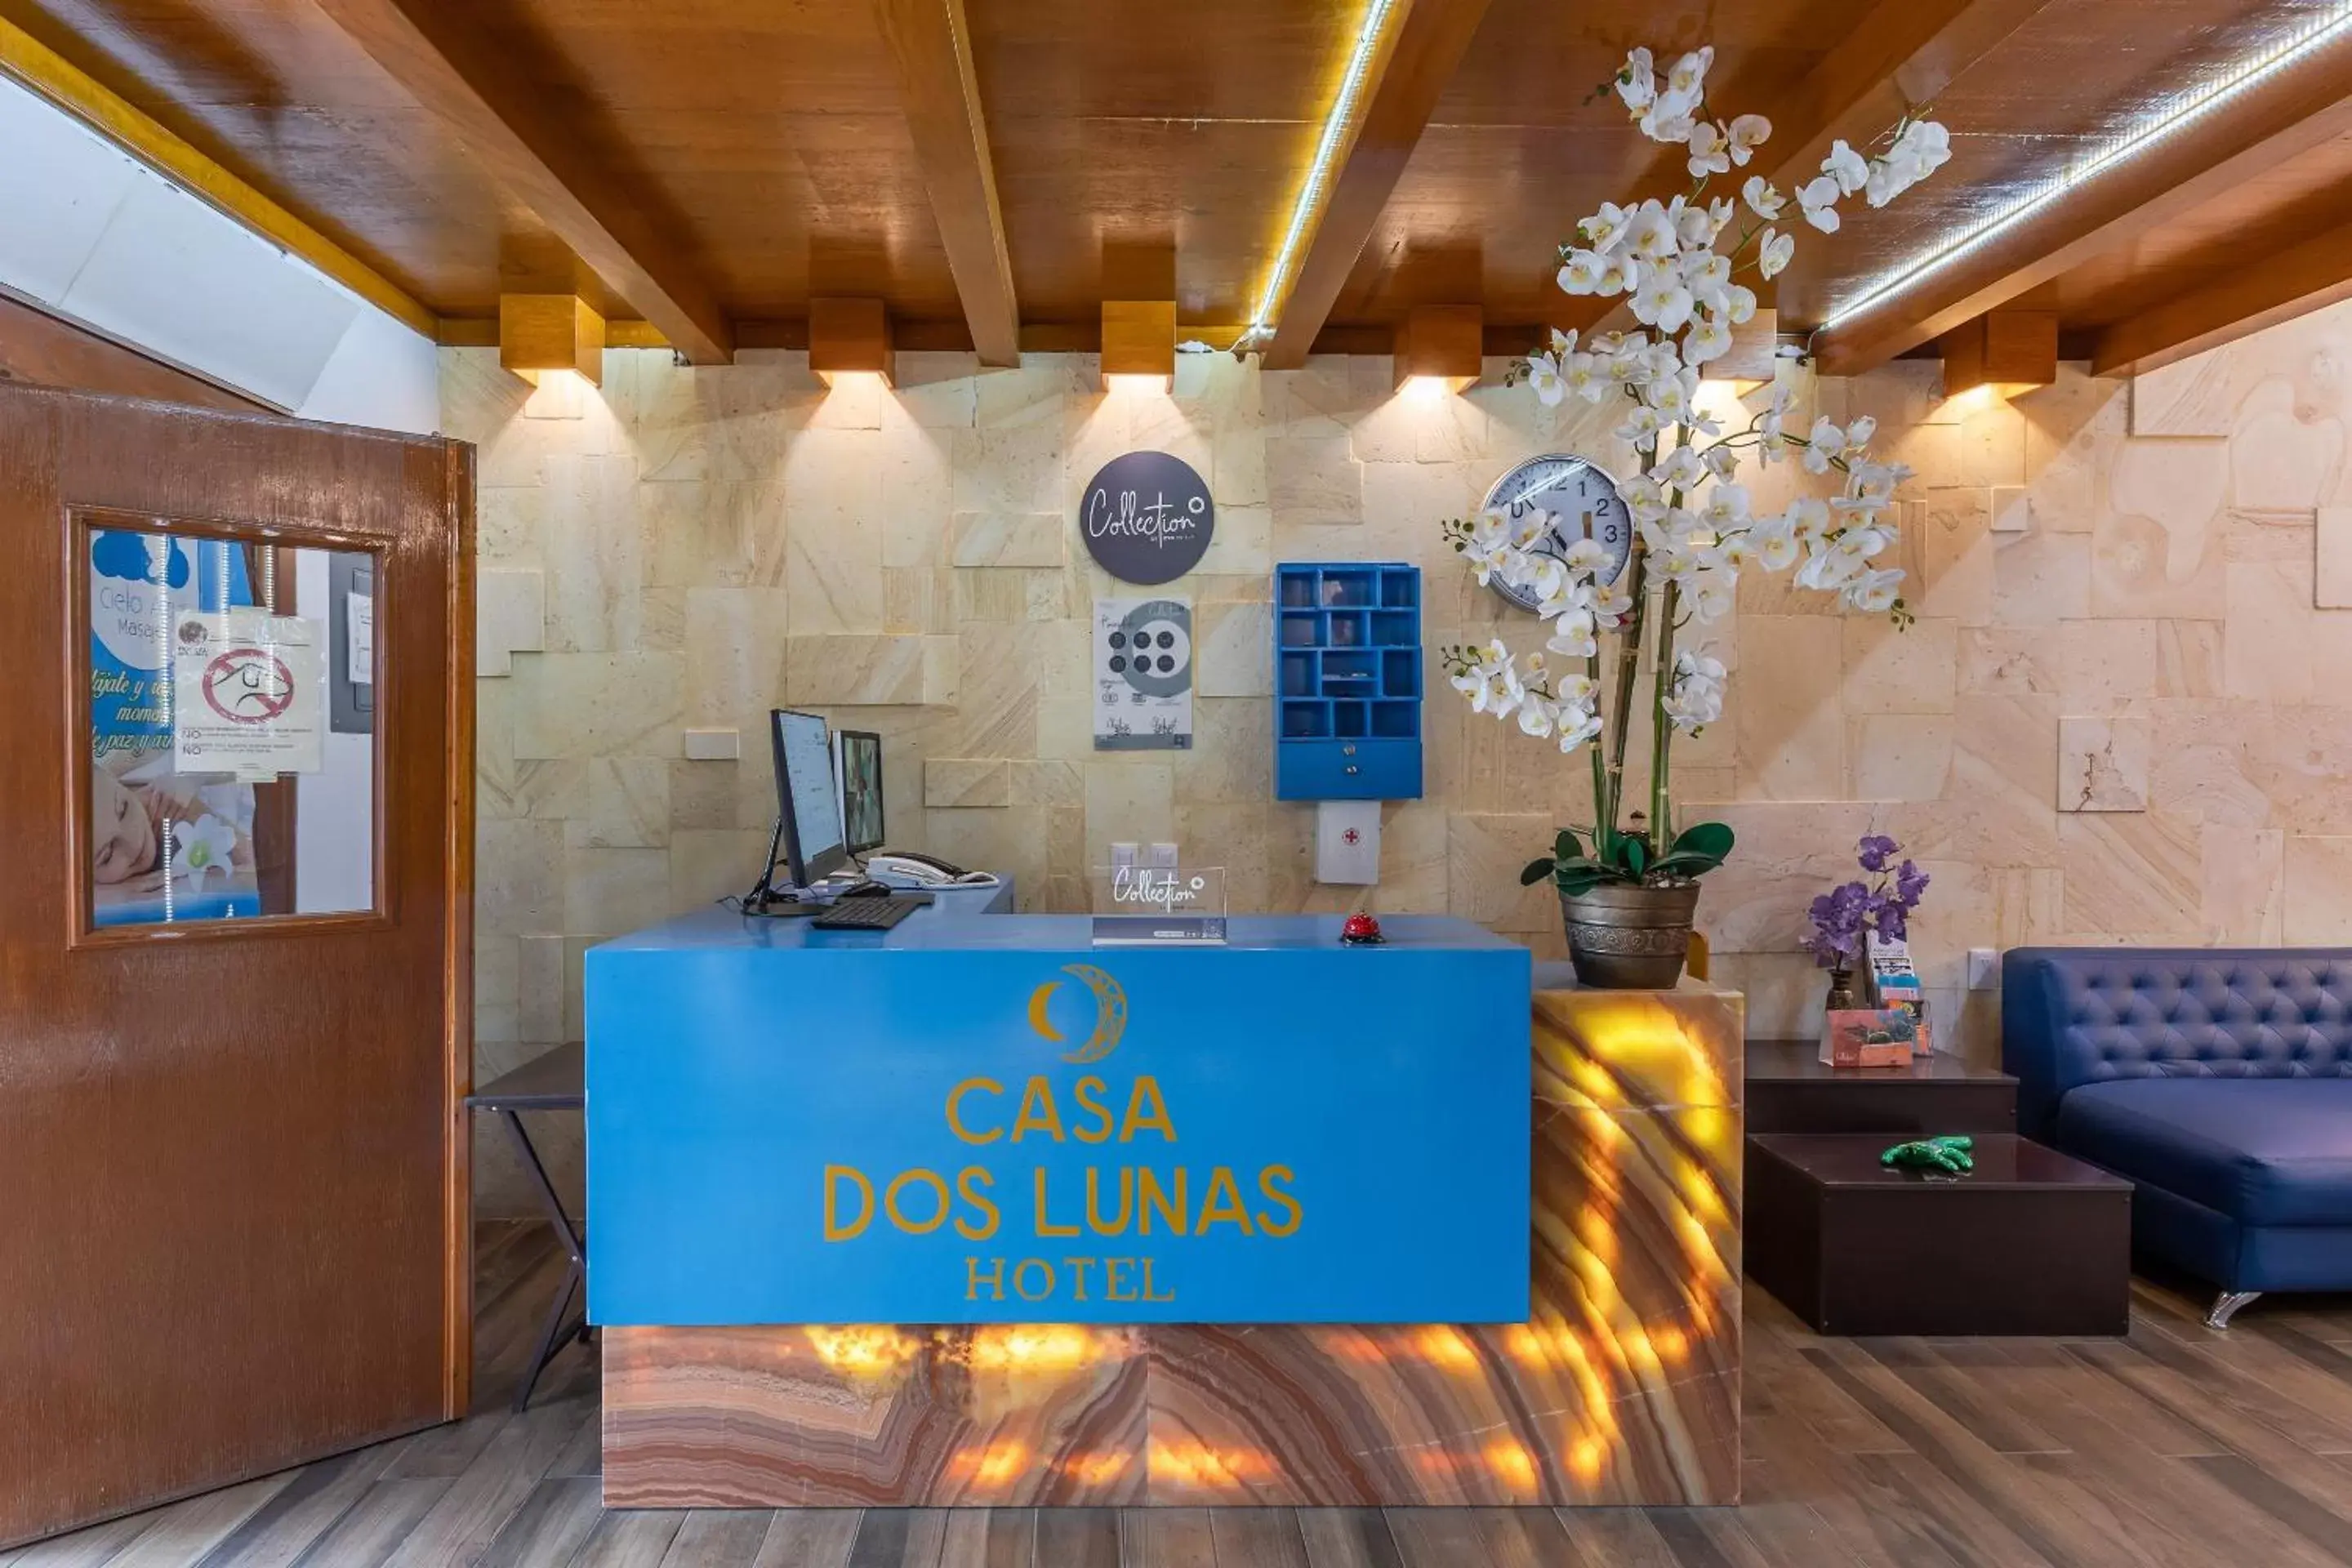 Lobby or reception in Casa Dos Lunas